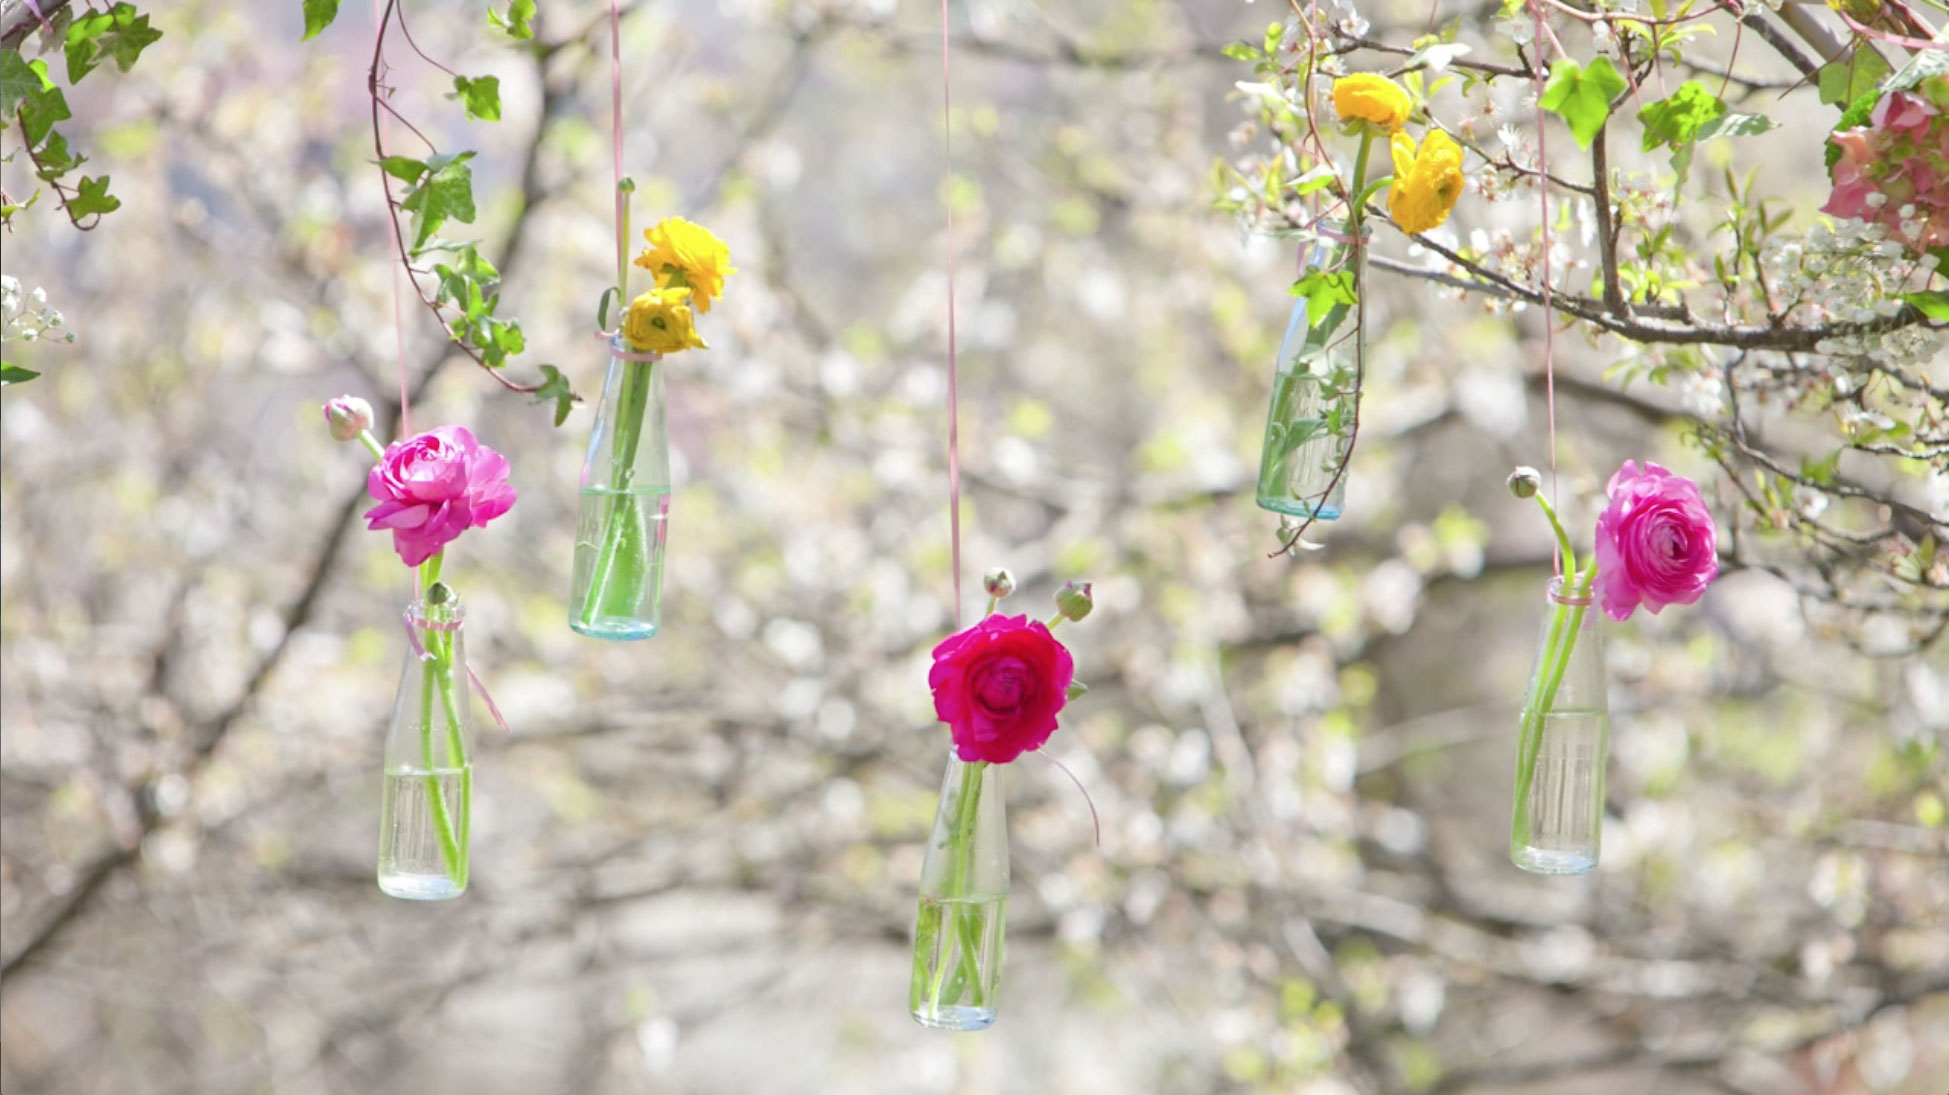 foto artistica di fiori di colori diversi inserite dentro a bottiglie che pendono da rami di un albero